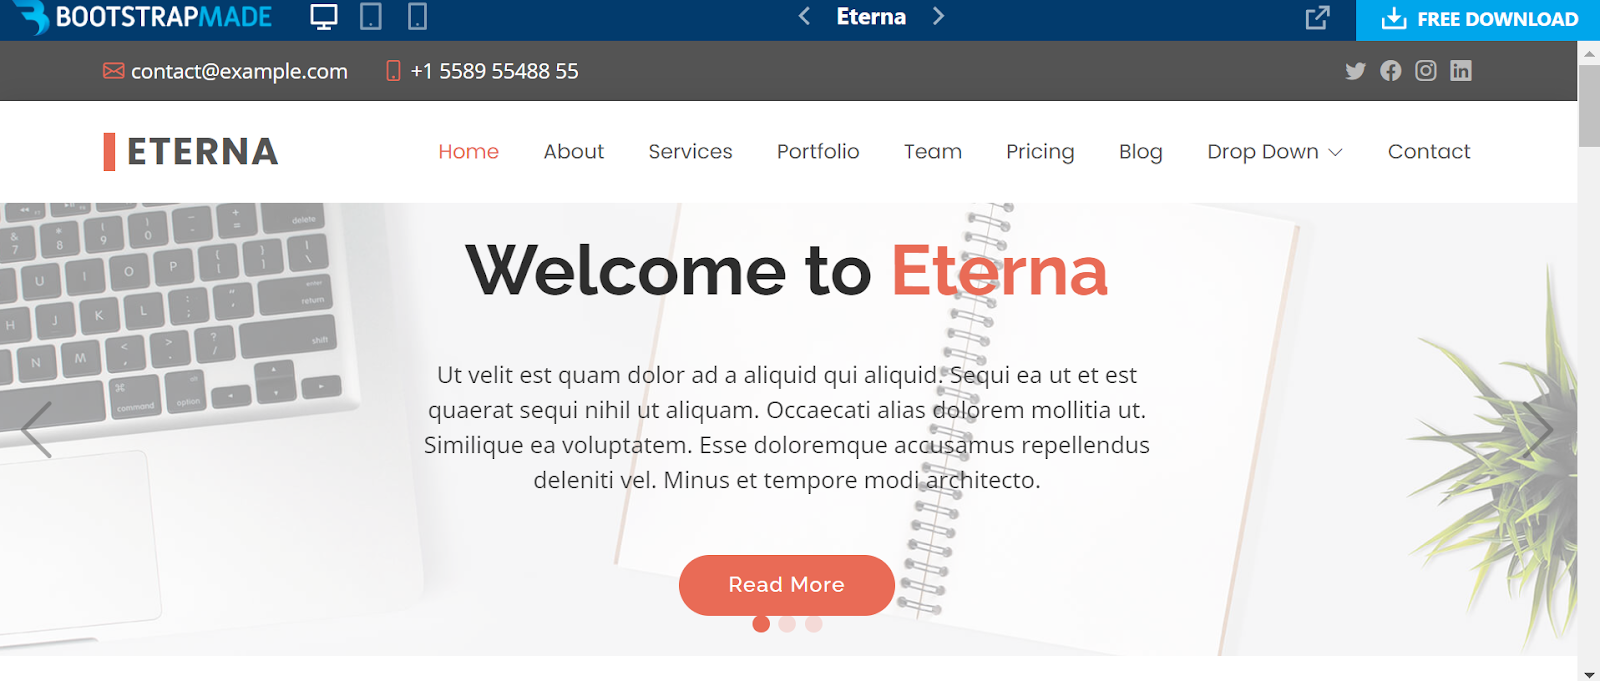 Bootstrap website templates, Eterna